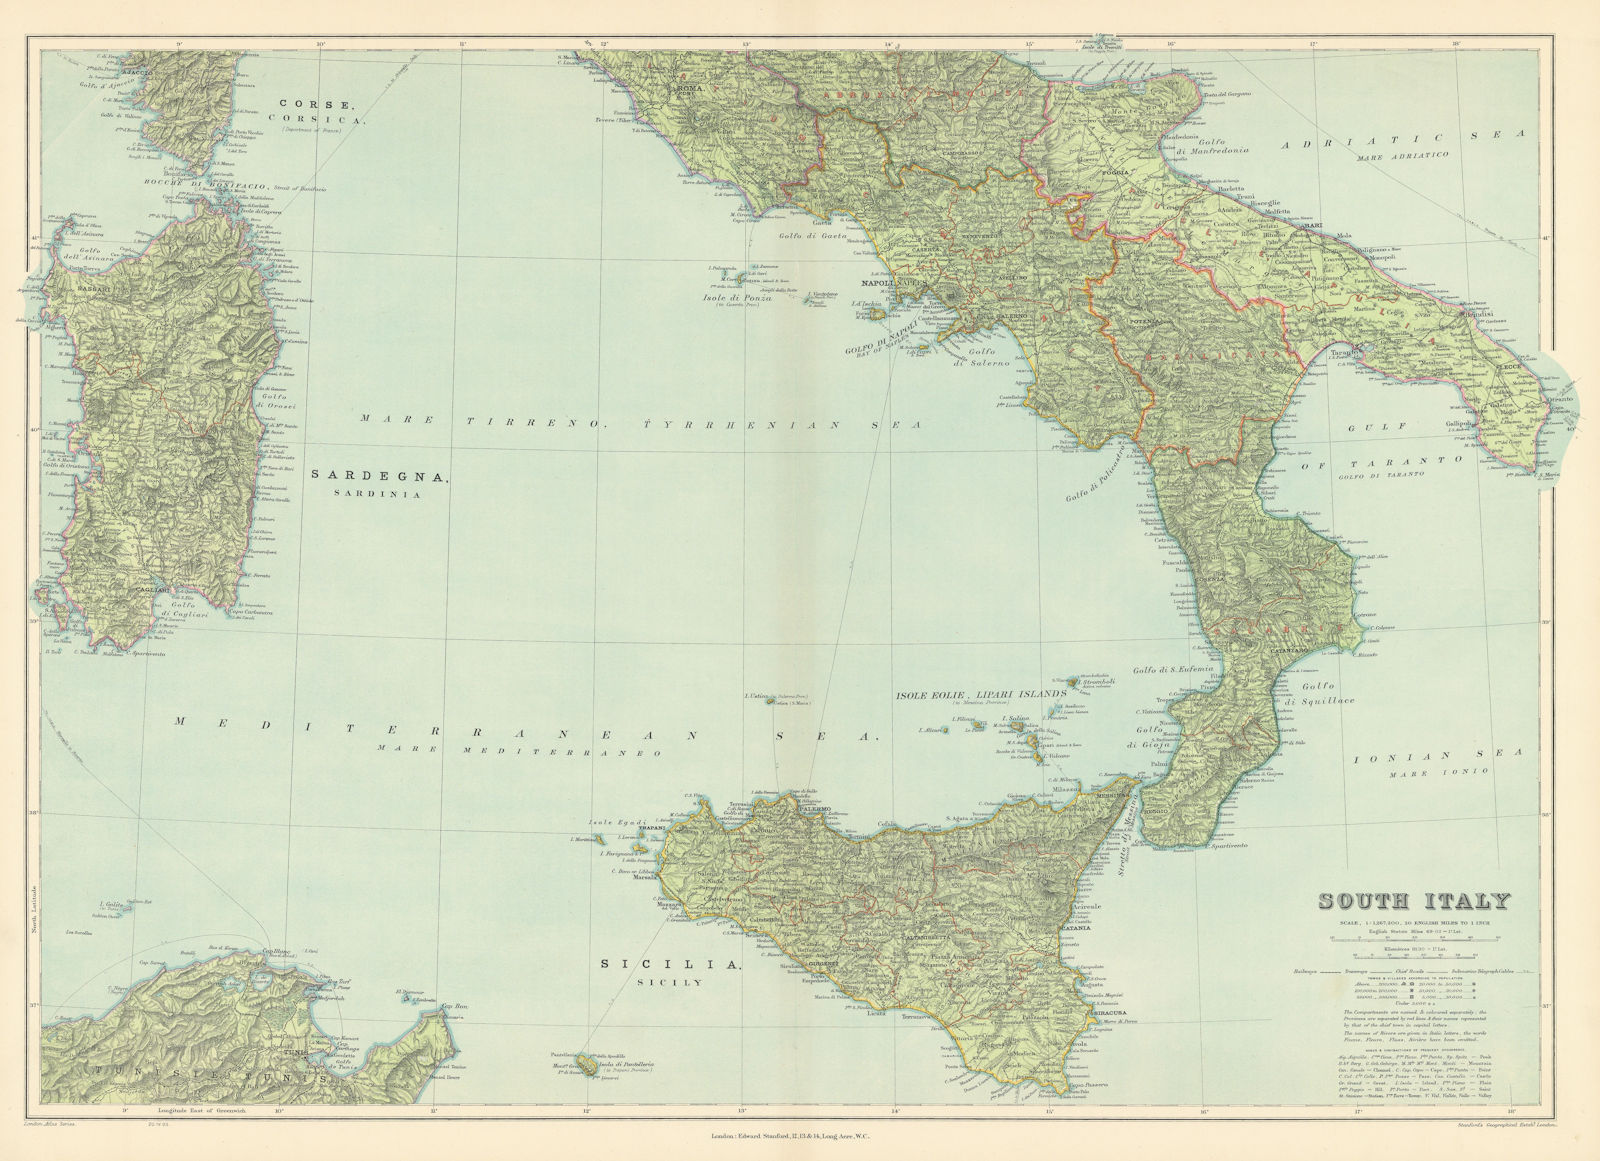 South Italy. Sicily Calabria Puglia Abruzzo Lazio Campania. STANFORD 1904 map